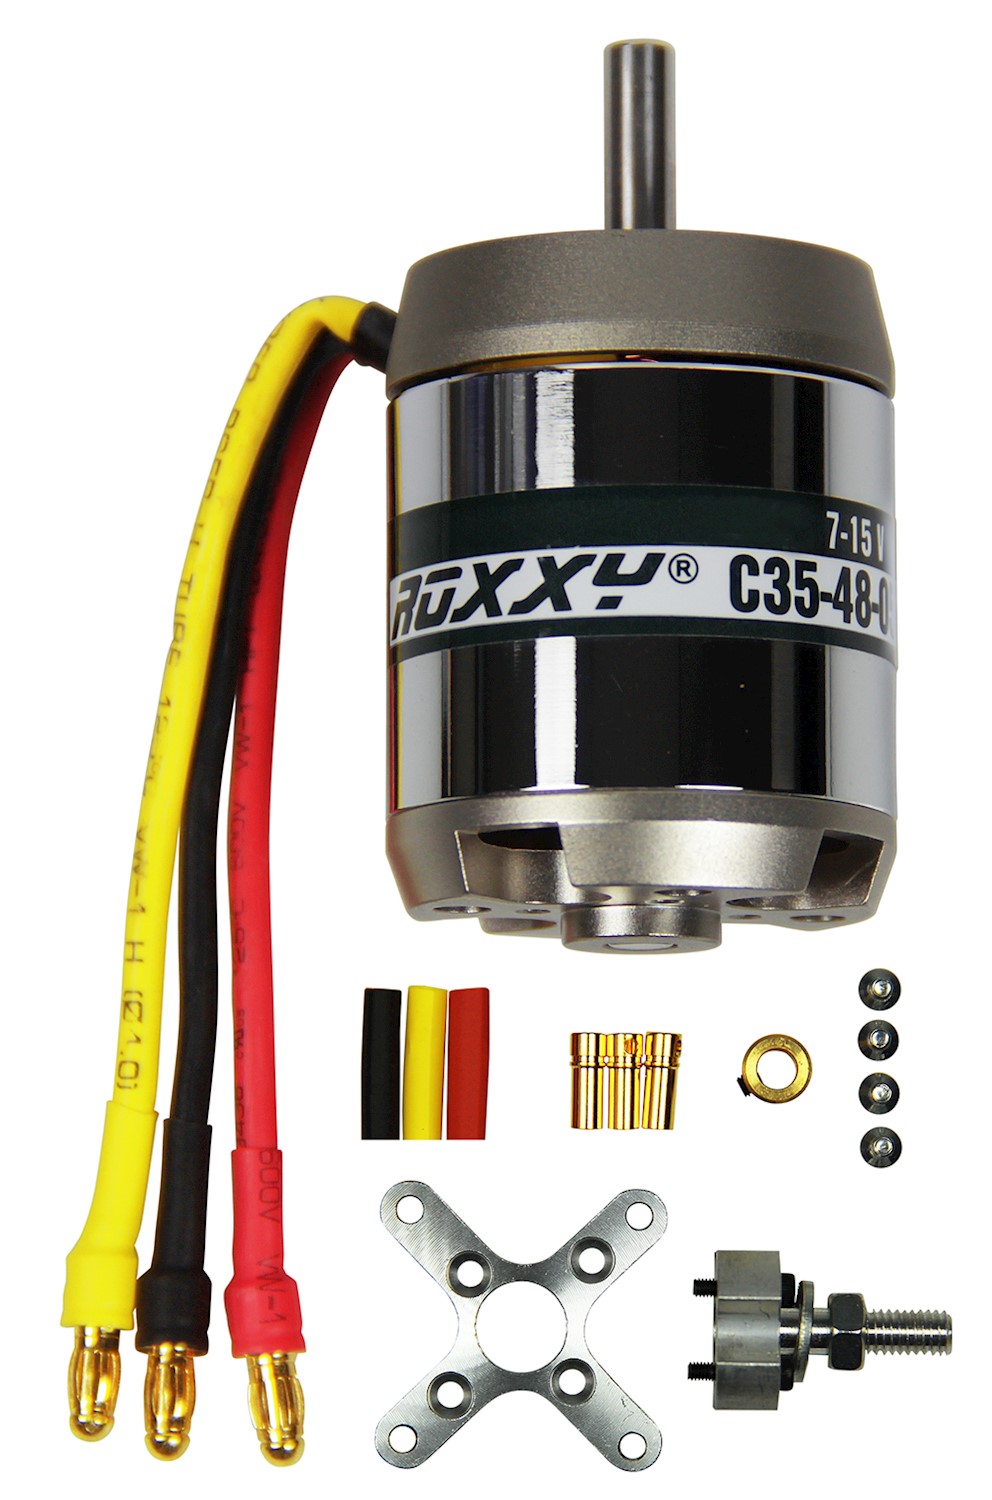 Multiplex ROXXY Brushless Motor BL Outrunner C35-48-1150kV